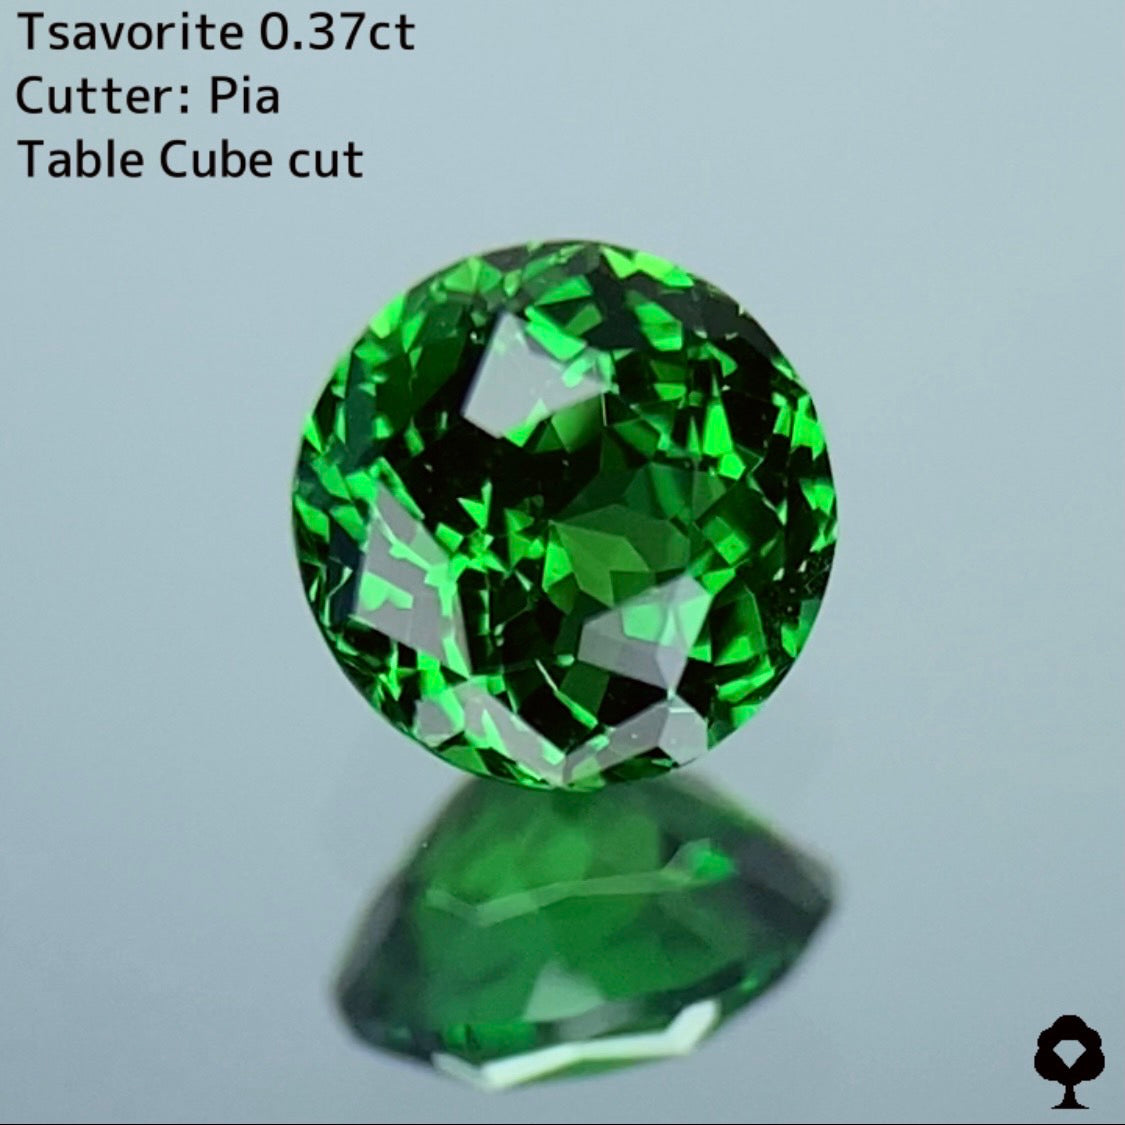 お客さま専用【Pia Table Cube Cut】ピアッちゃん記念すべき初テーブルキューブ★ツァボライト 0.37ct